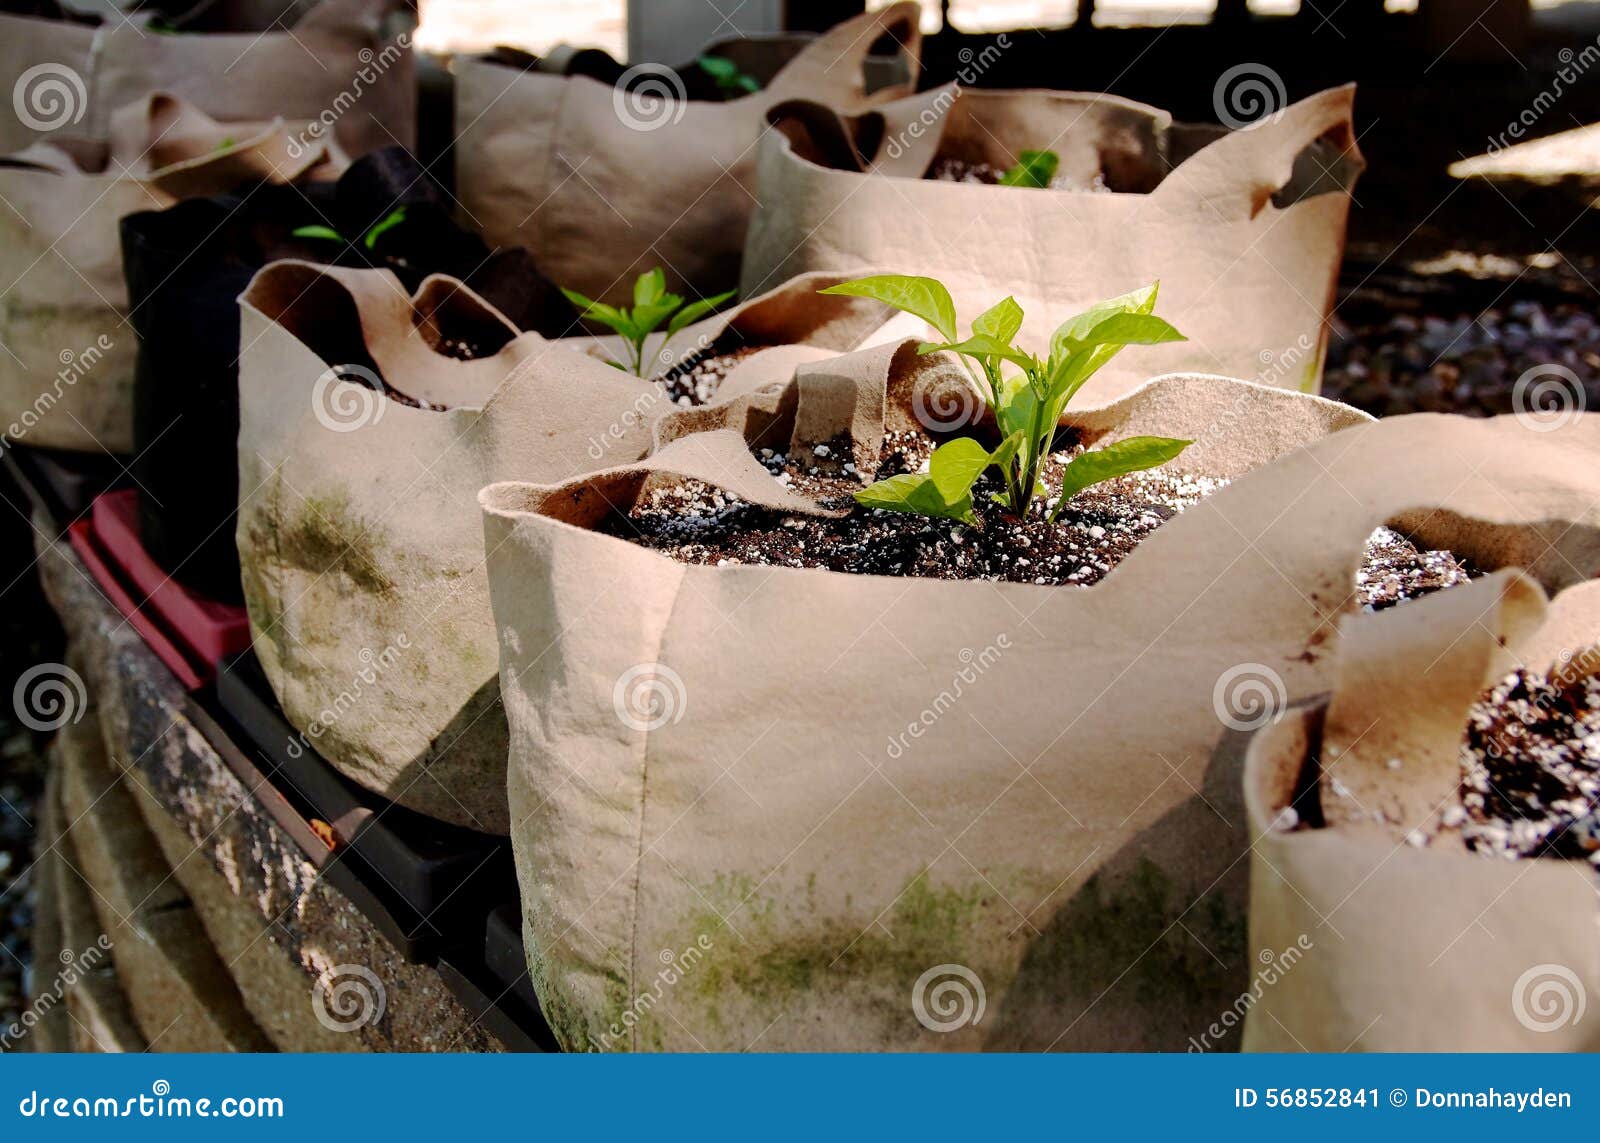 seedlings growing in grow bags